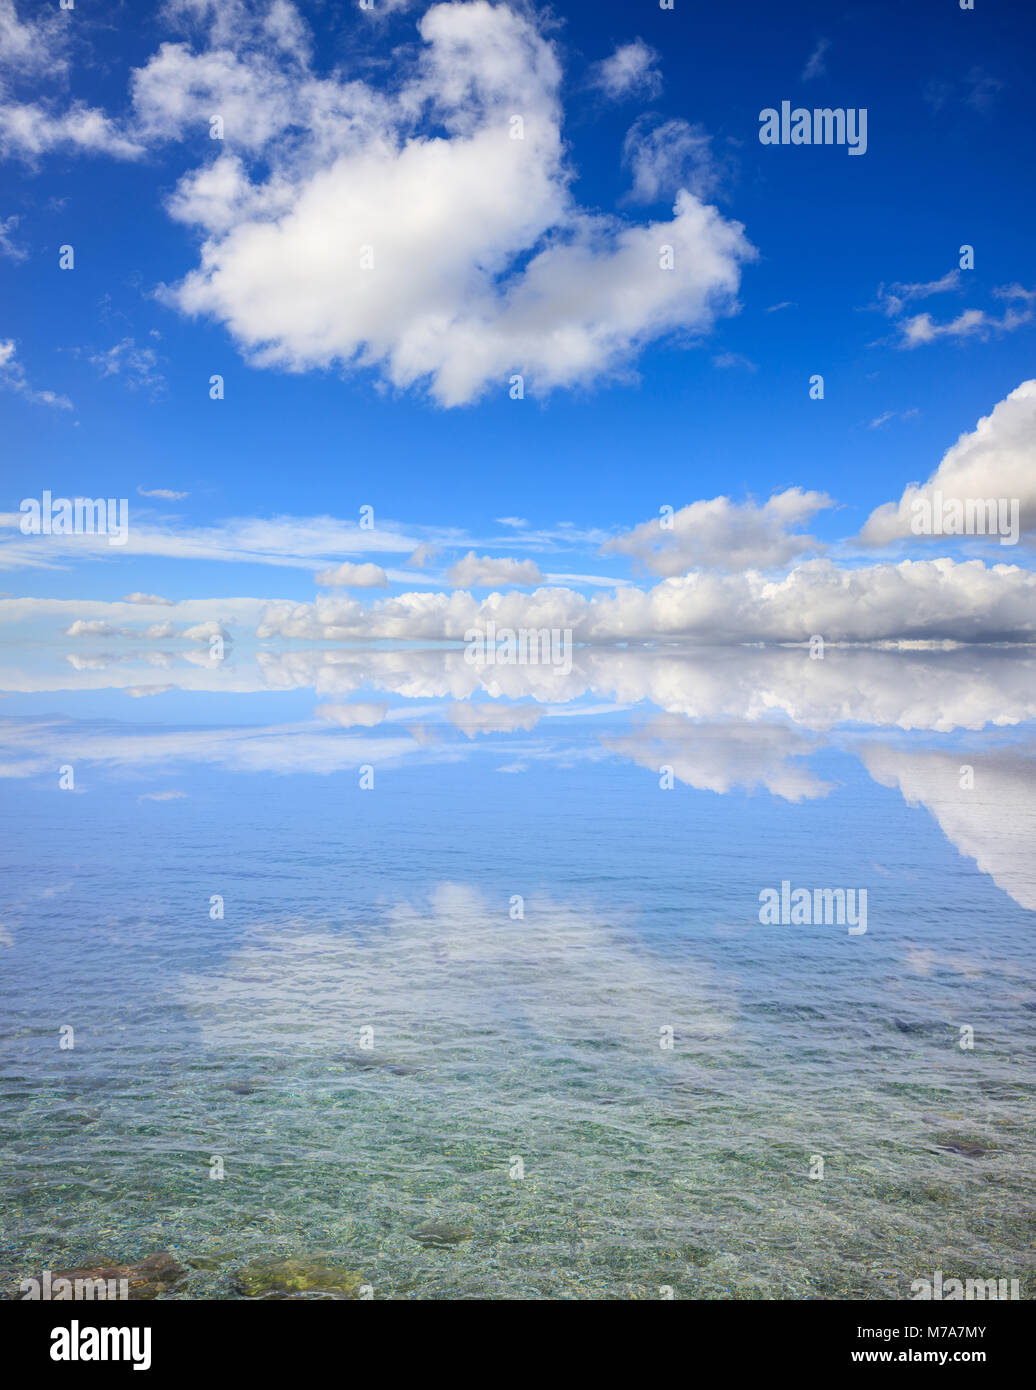 La surface clair transparent. L'eau peu profonde, ciel bleu avec des nuages de fond Banque D'Images